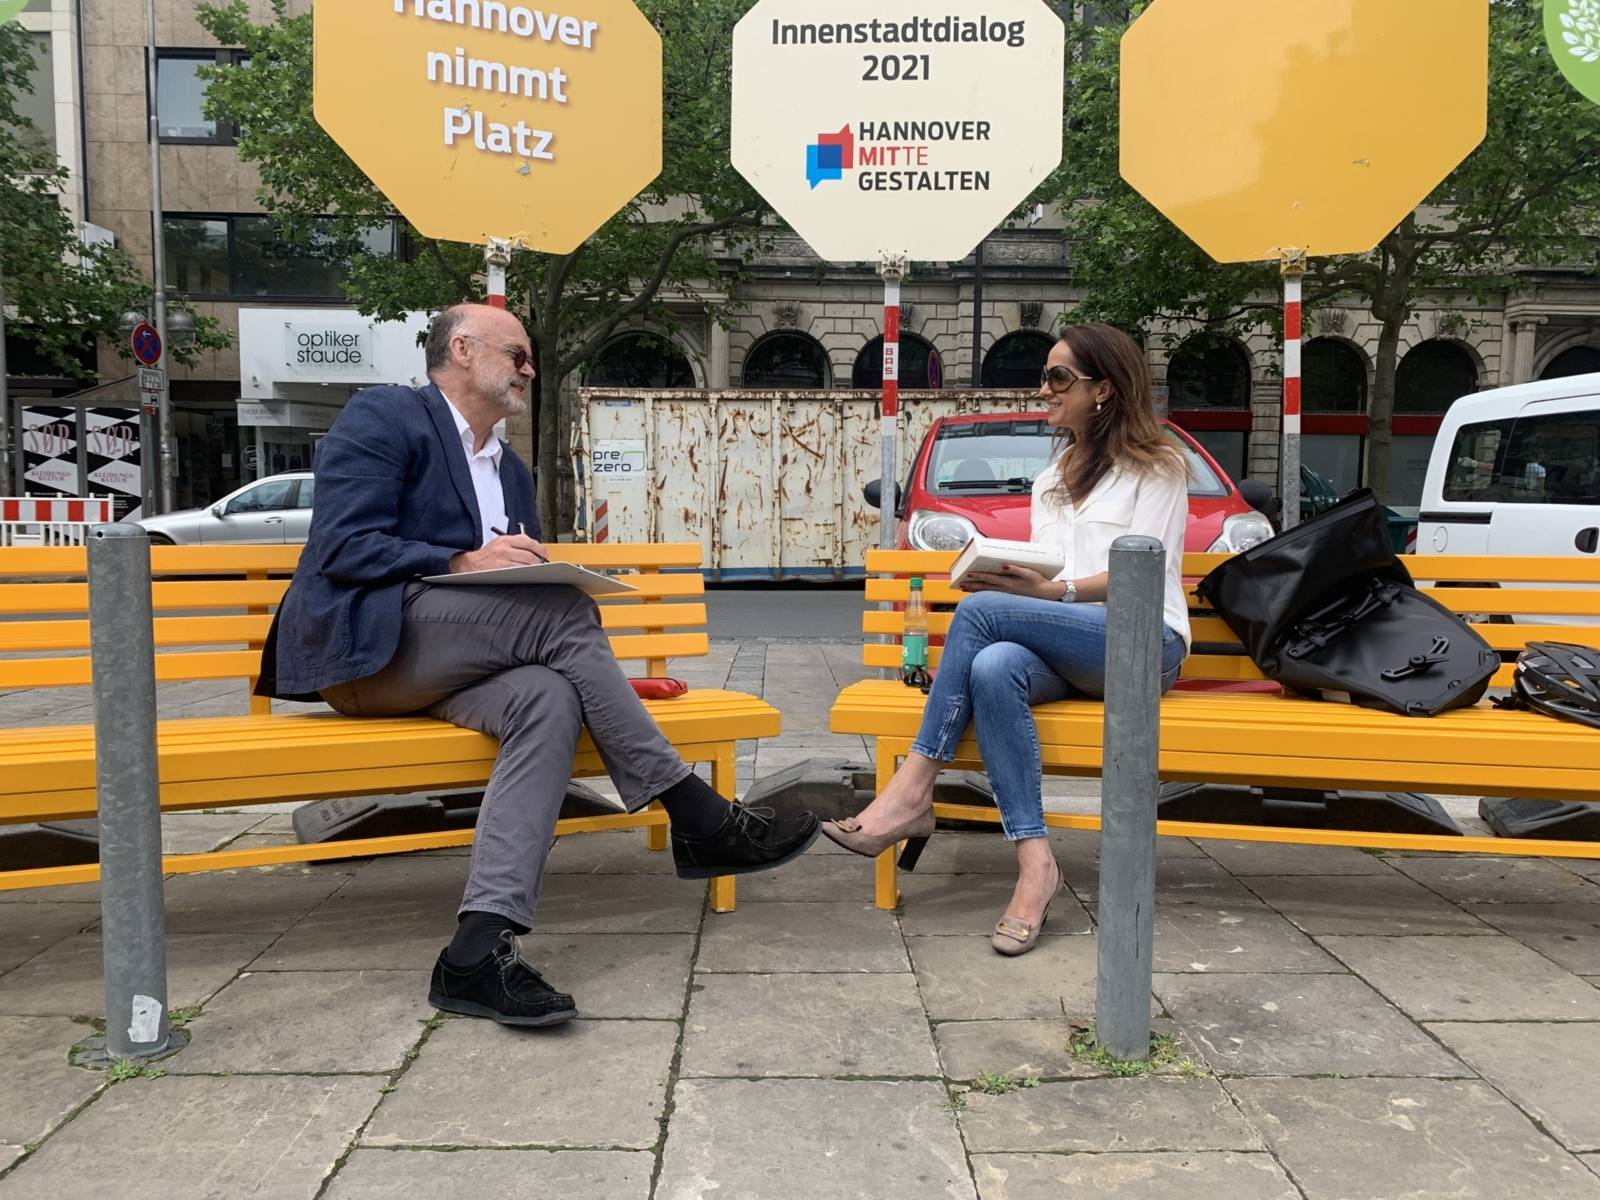 Zwei Personen im Gespräch auf einer Bank in Hannovers Innenstadt.